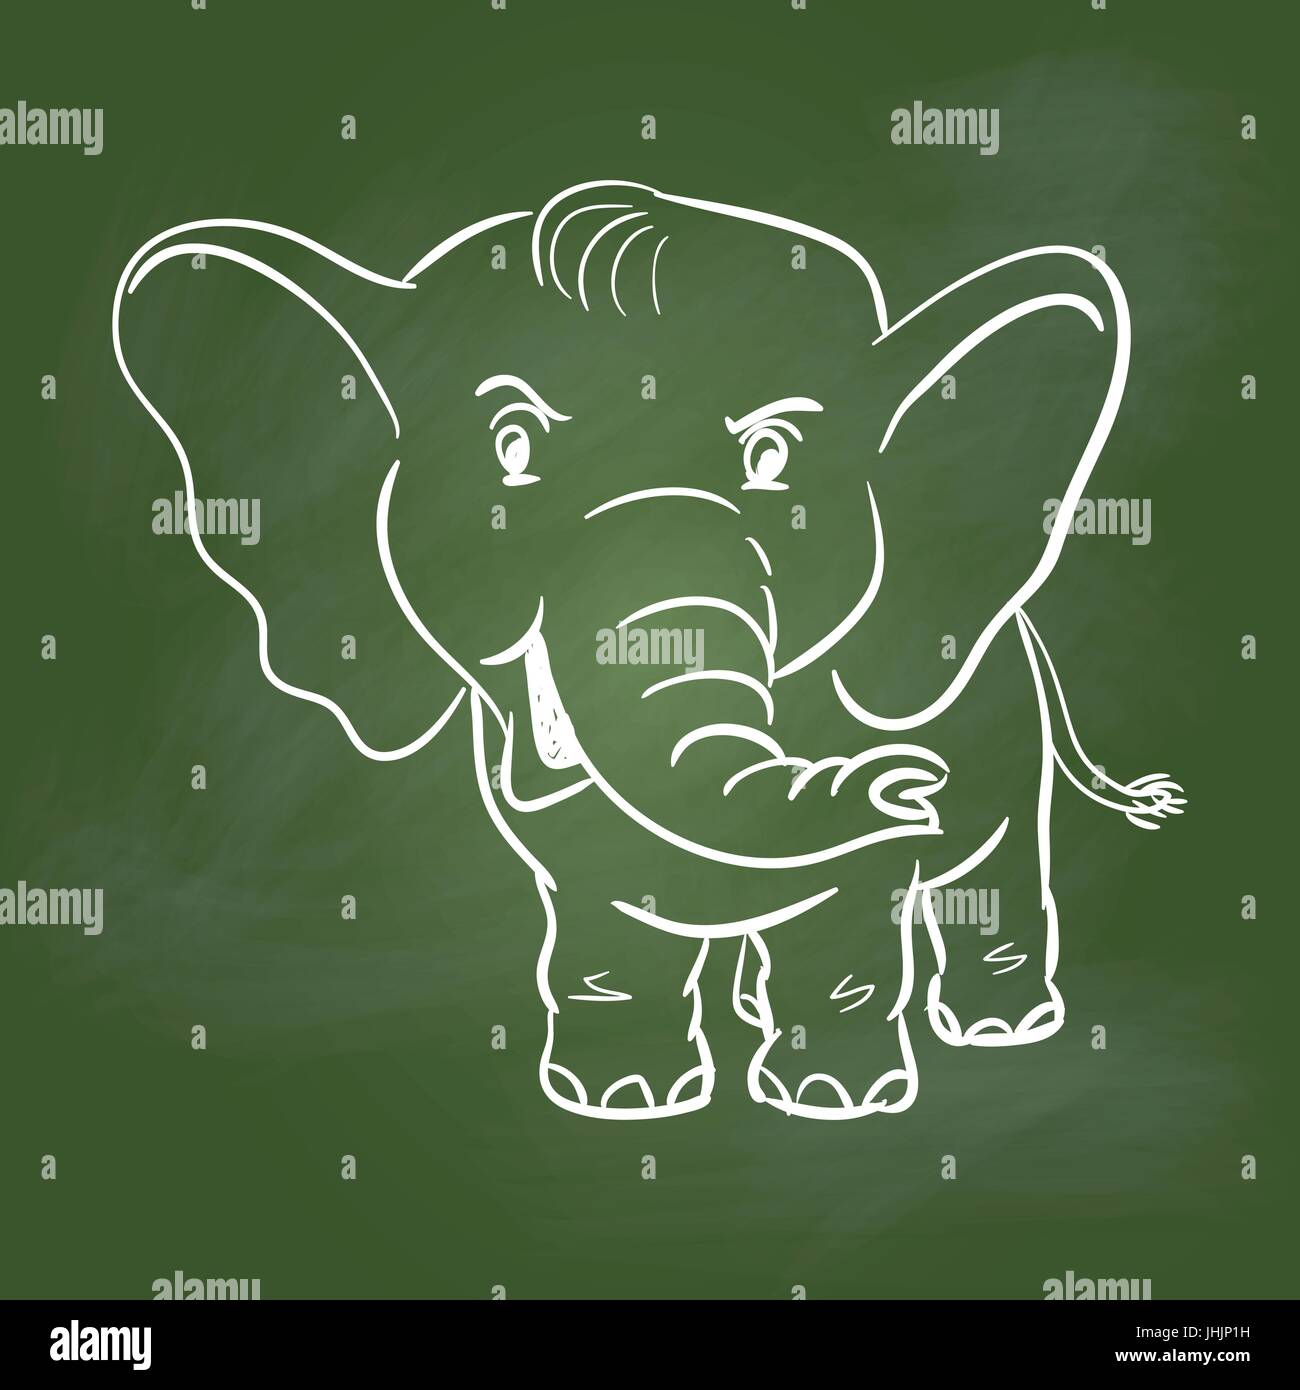 Handzeichnung des Elefanten auf strukturierte grüner Grundplatte. Bildungskonzept, Vektor-Illustration Stock Vektor